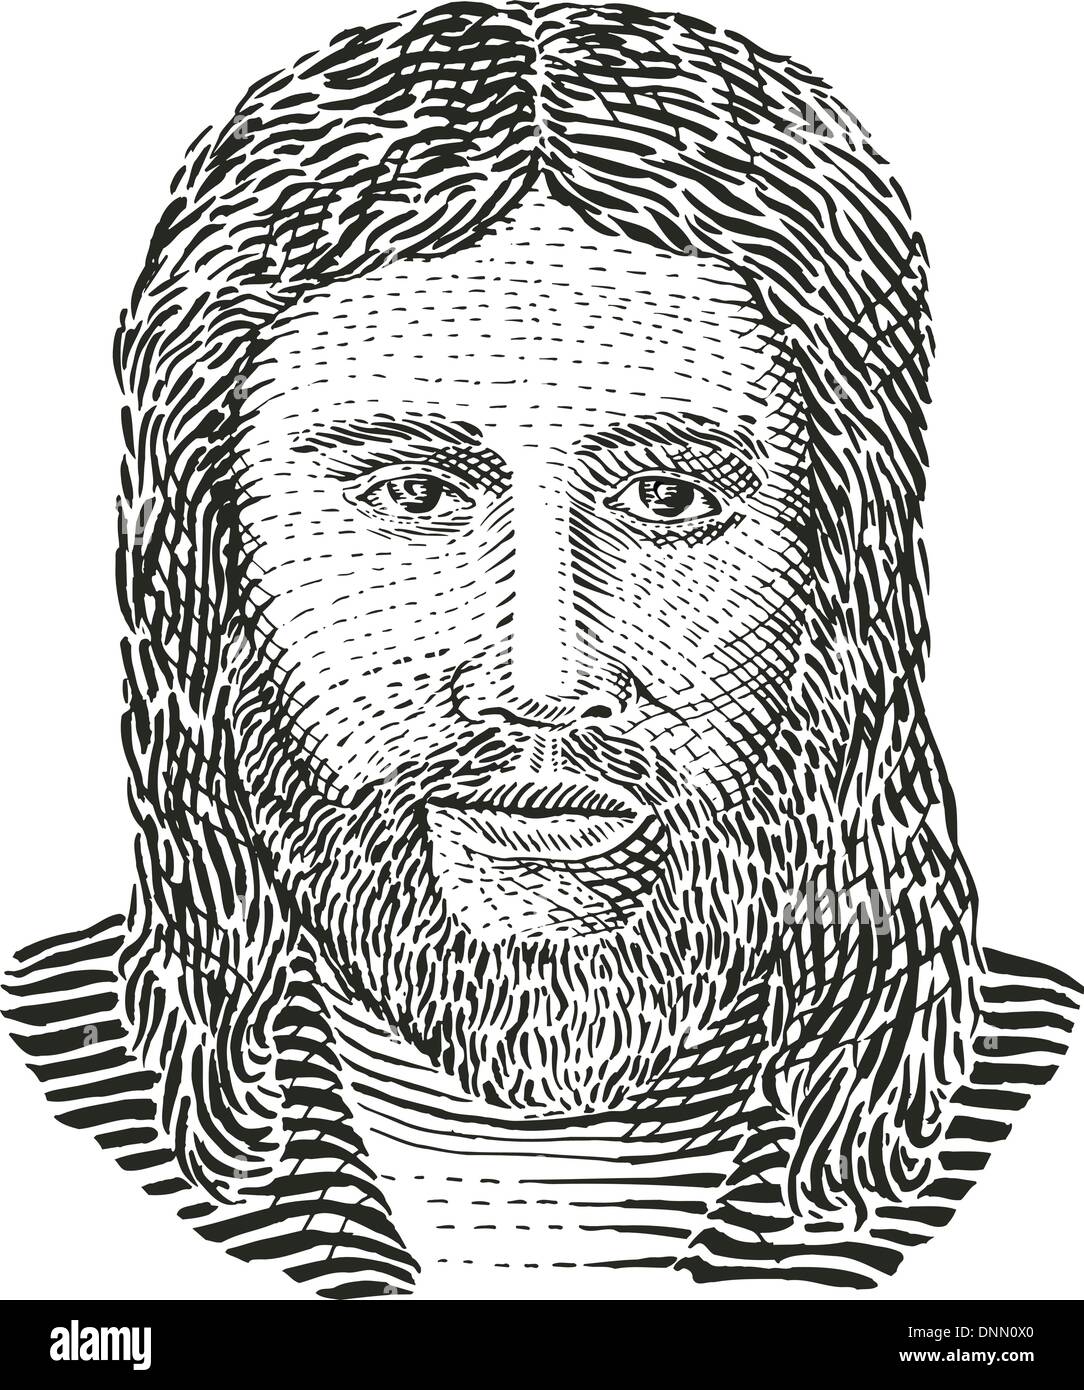 Abbildung von Jesus Christus Gravieren Vorderansicht im retro-Stil gemacht. Stock Vektor